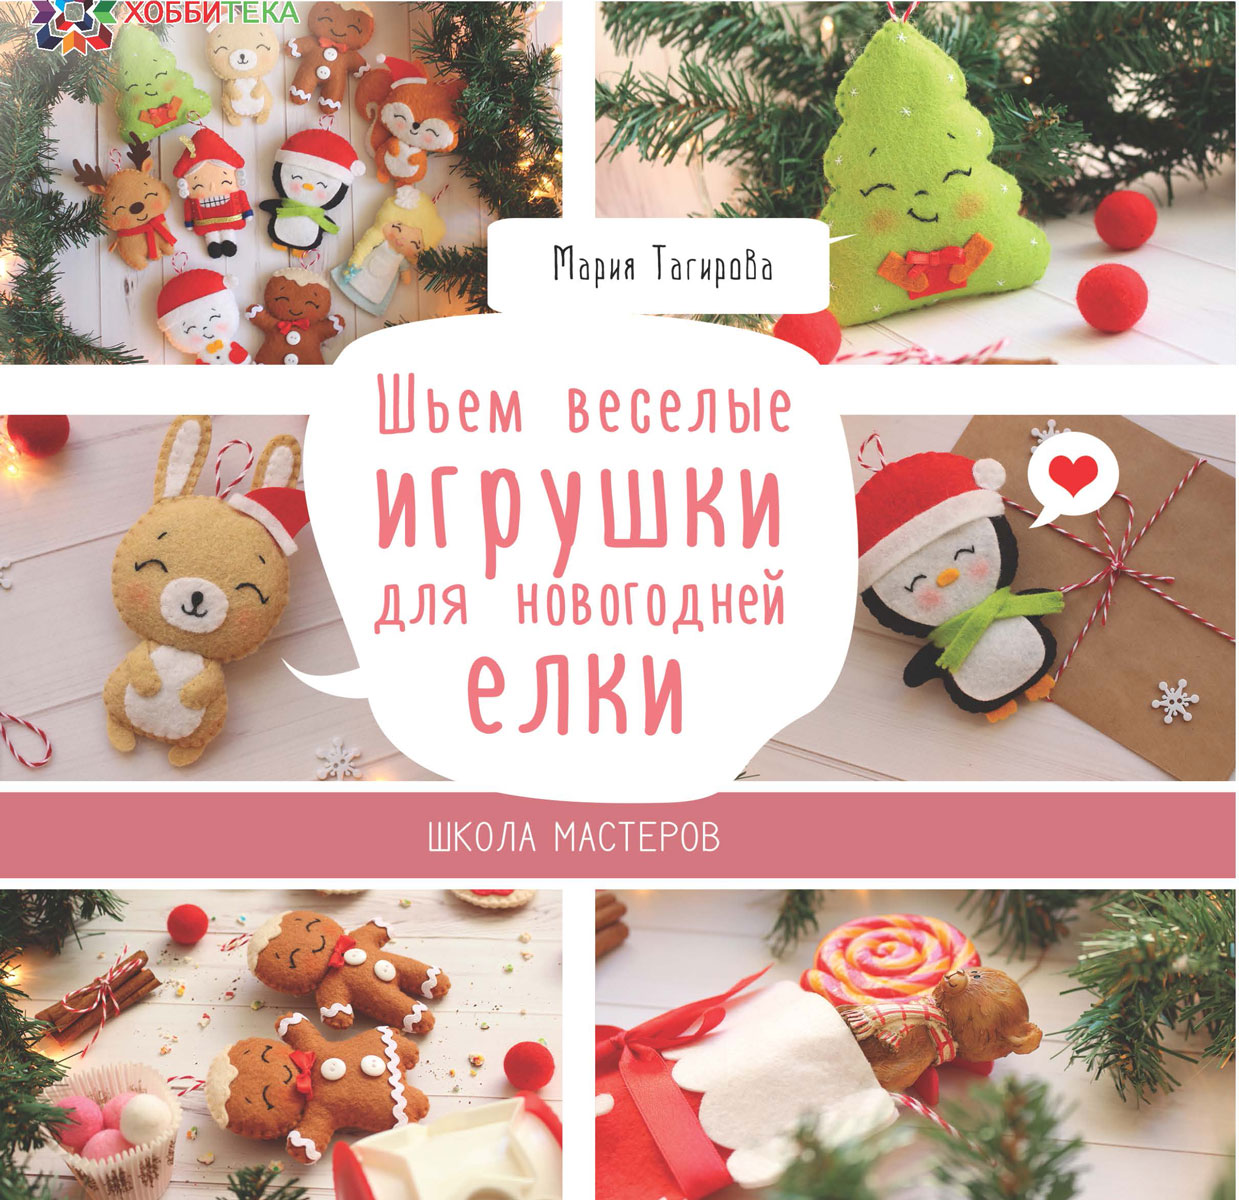 Шьем веселые игрушки для новогодней елки. Школа мастеров. Мария Тагирова